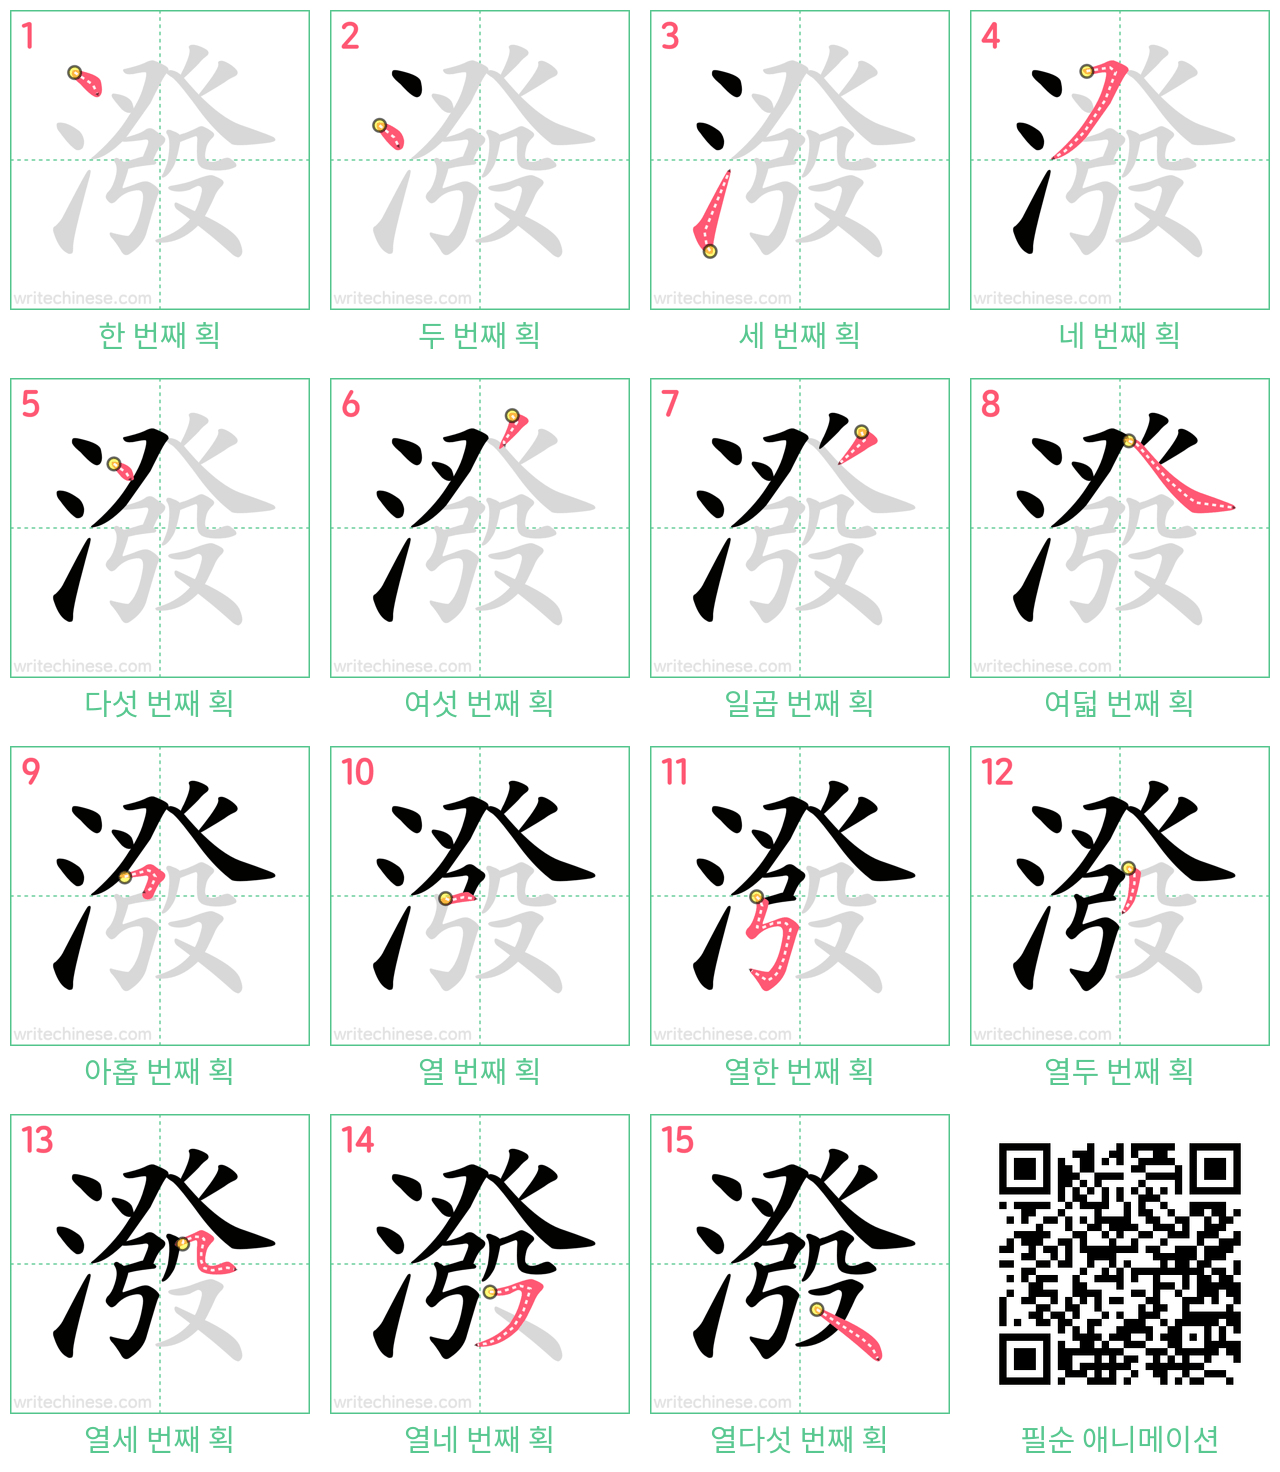 潑 step-by-step stroke order diagrams